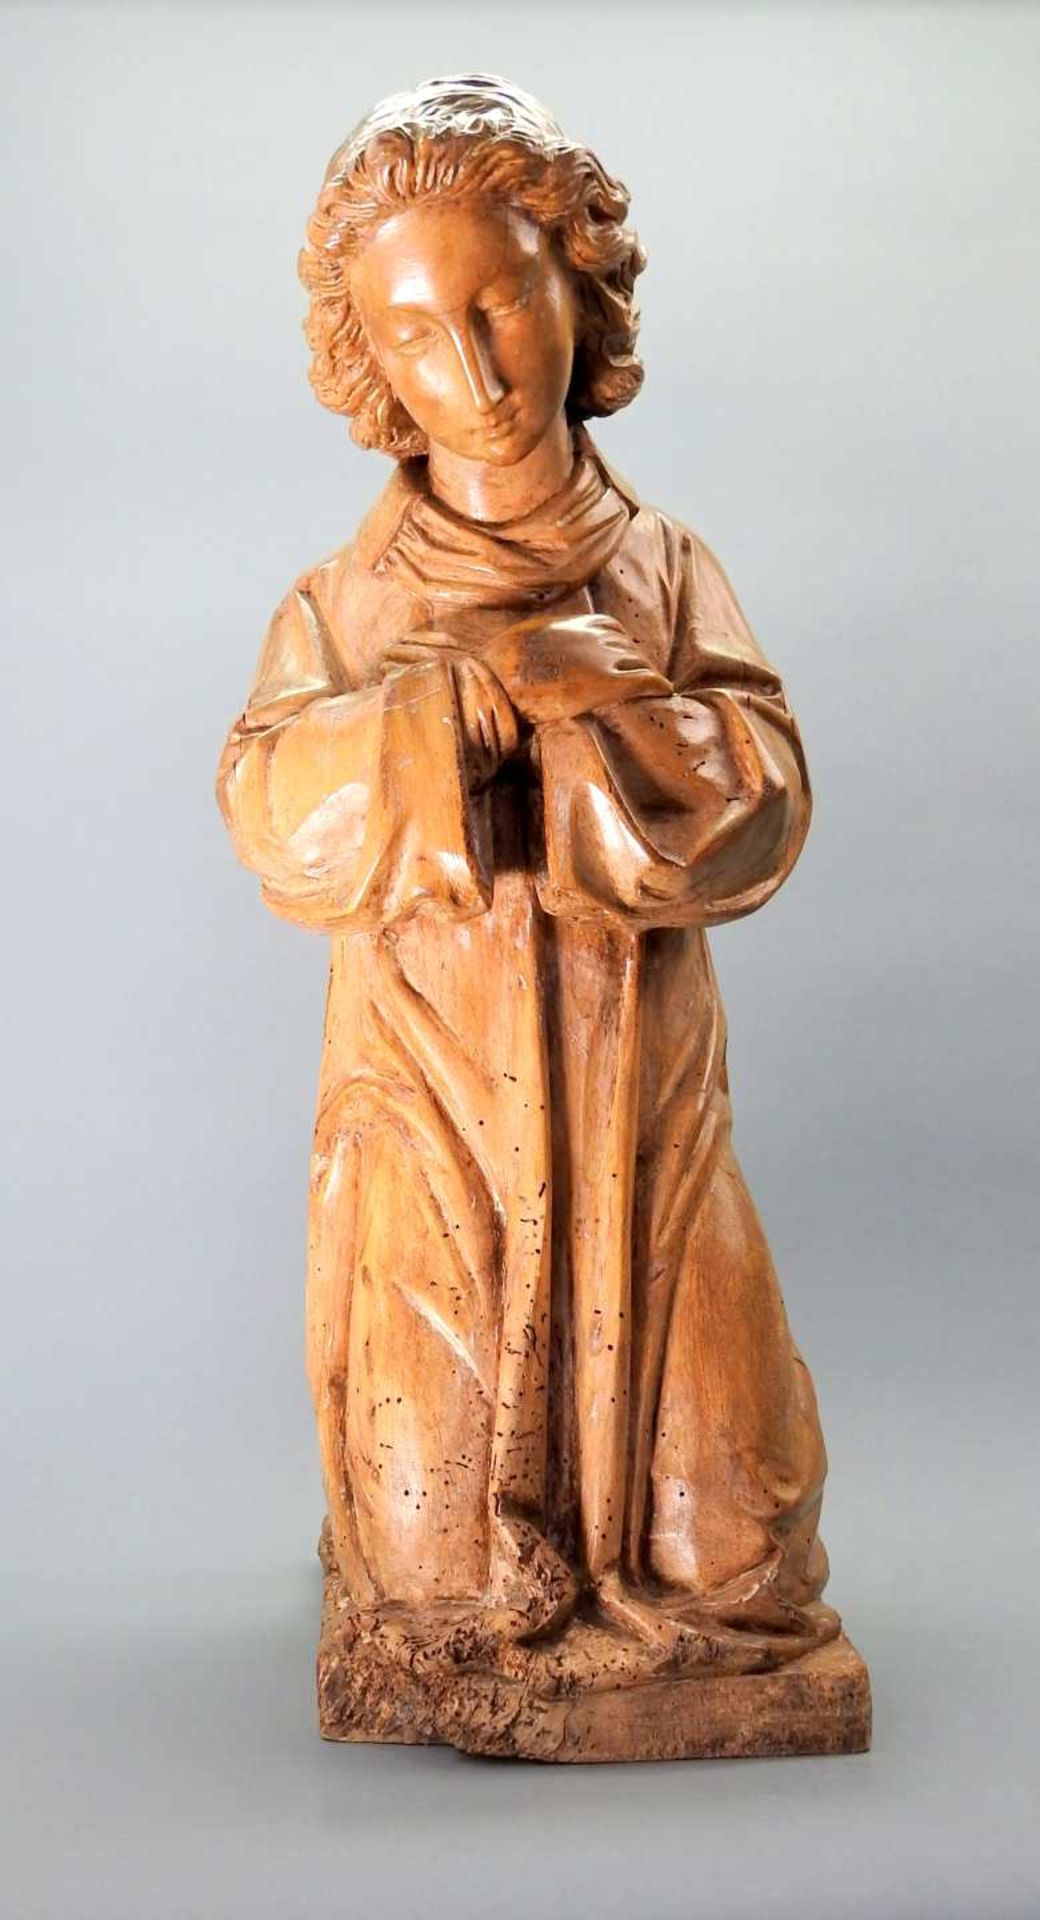 Kniende HeiligenfigurHolz, handgeschnitzt. Eine trauernde Heiligenfigur in gebeugter, - Image 6 of 6